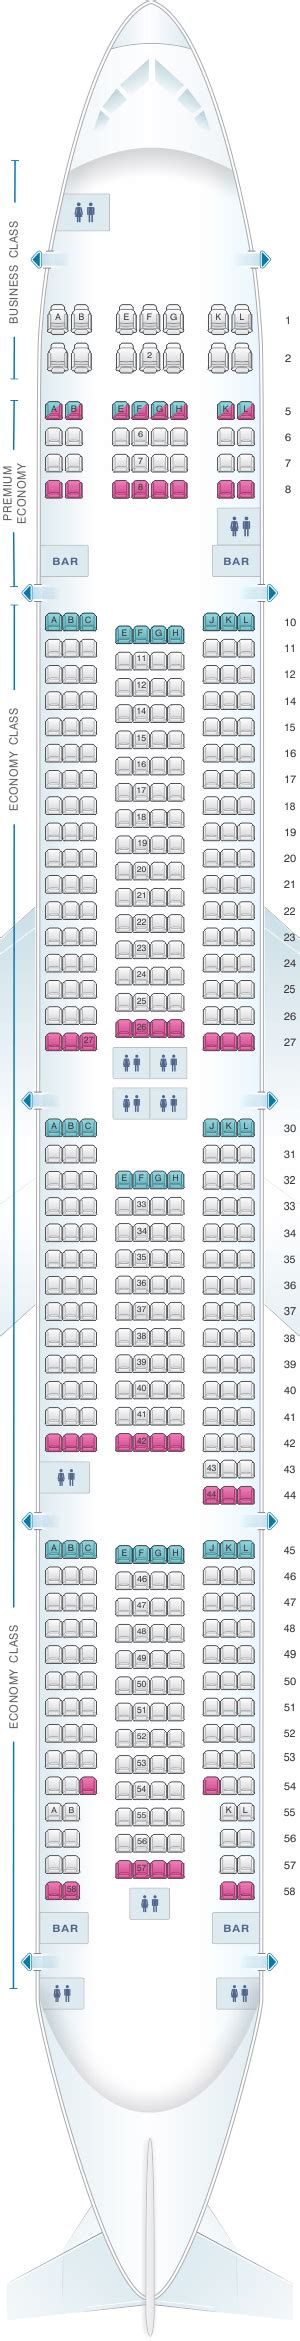 Seating Plan Boeing 777 300er Air France